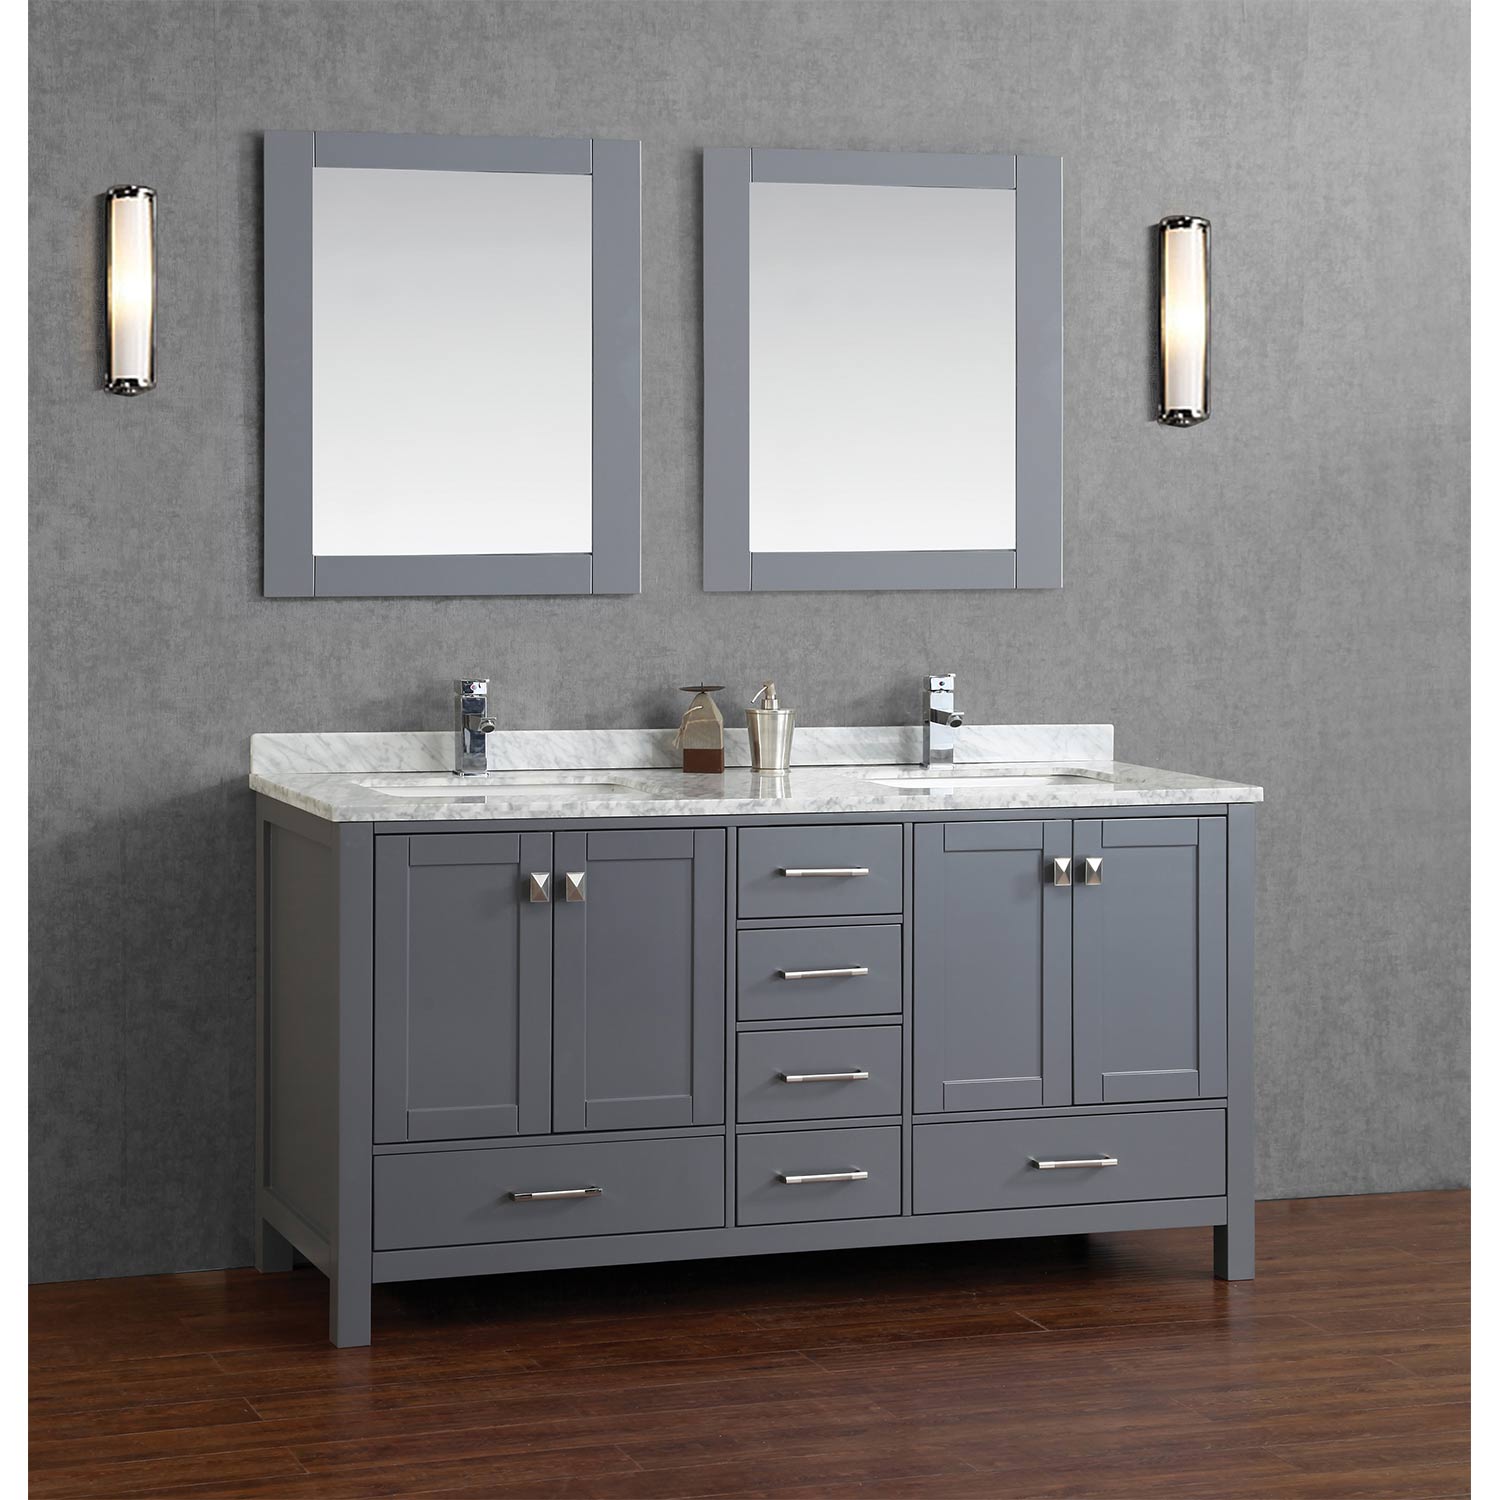 Solid Wood Double Bathroom Vanity, Solid Wood Double Bath Vanity Unit